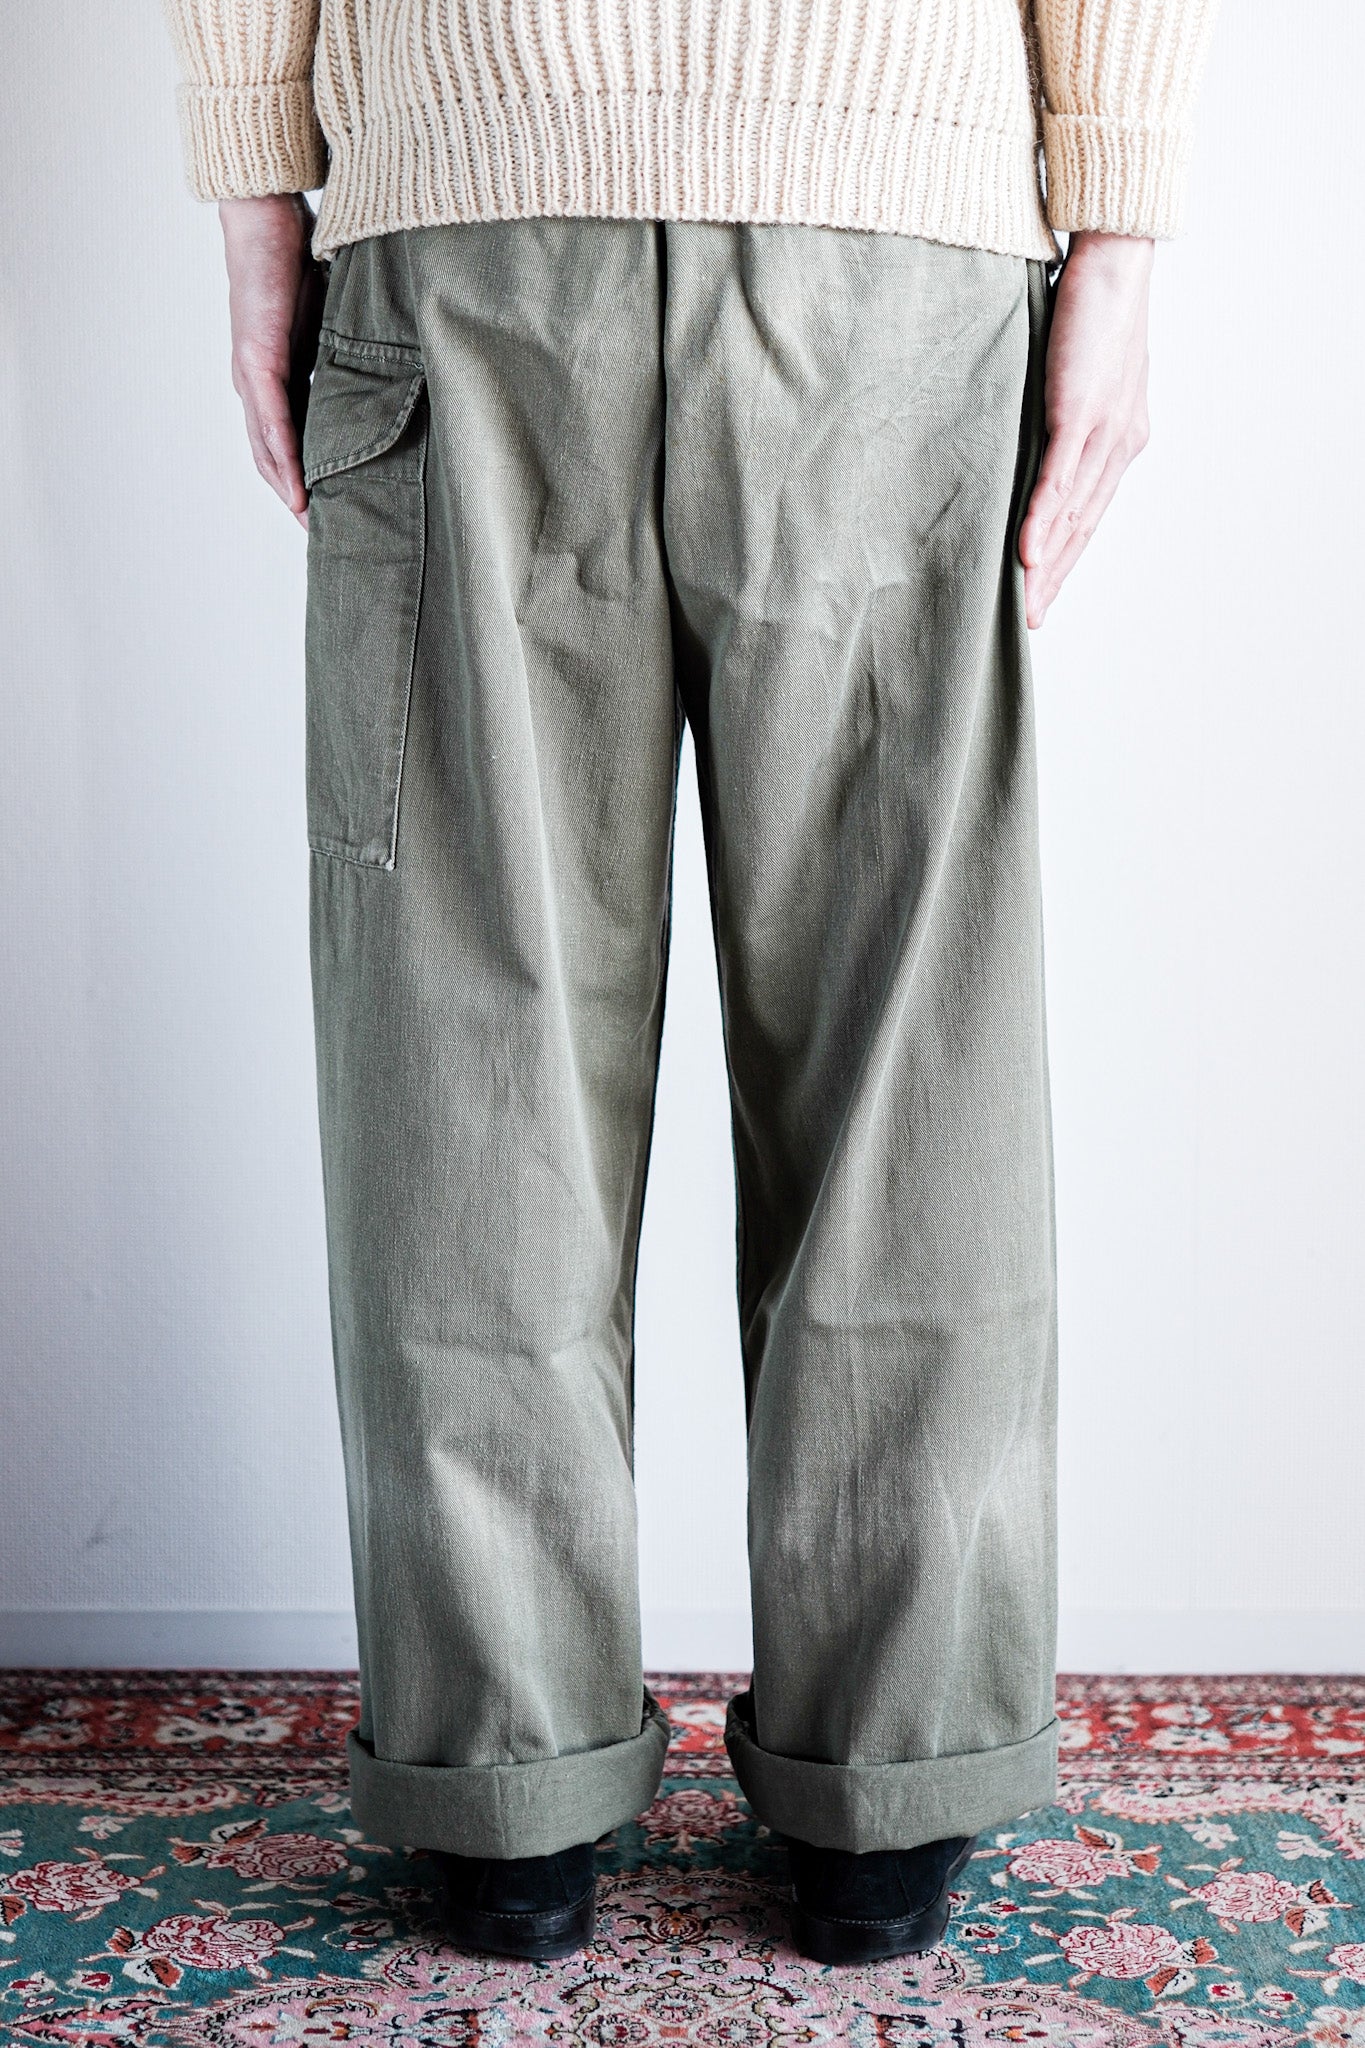 [~ 60's] British Army 1950 Pattern gurkha pantalon